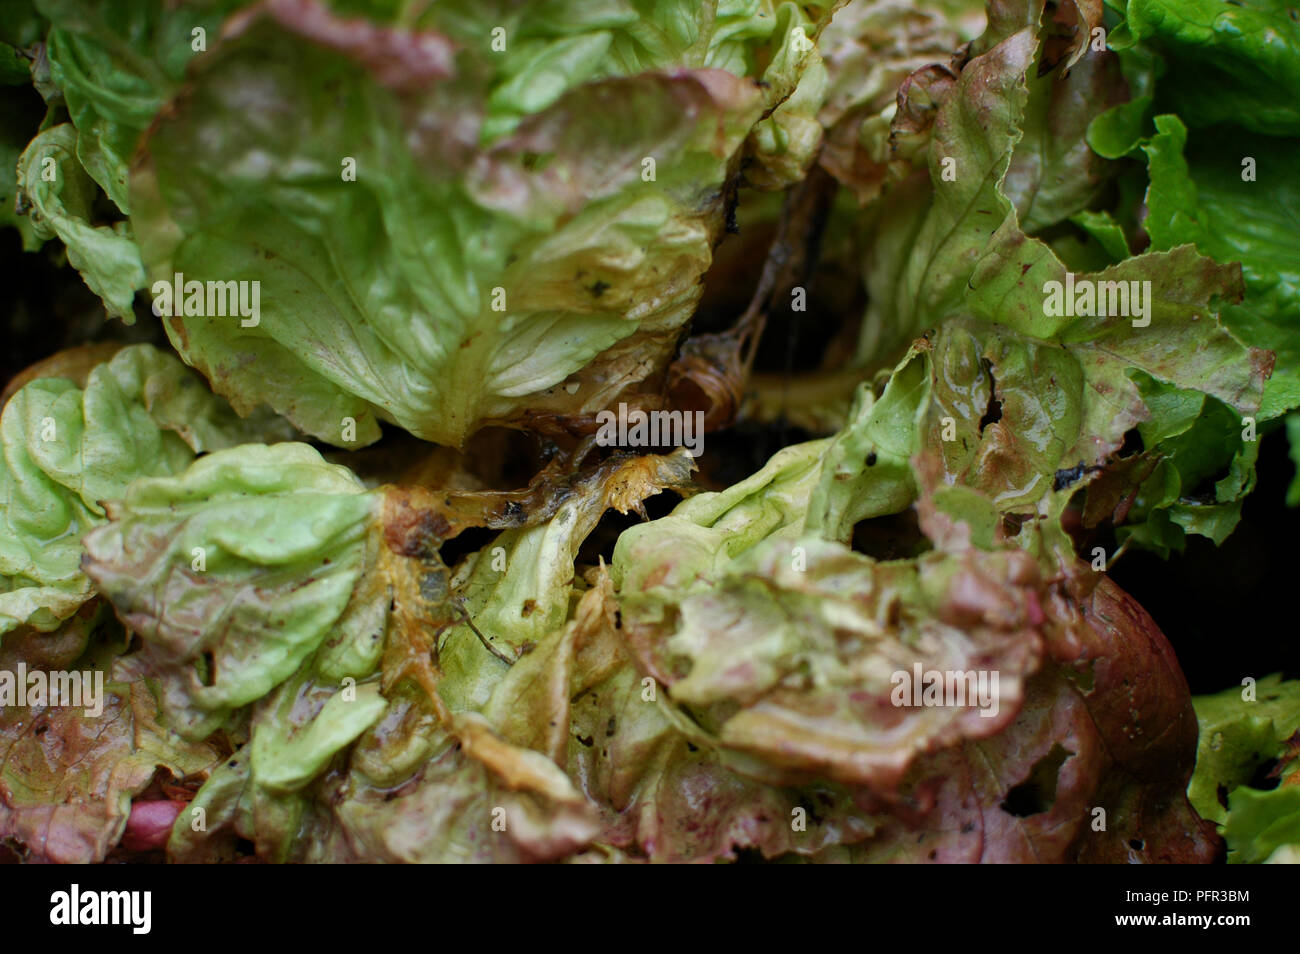 Lettuce leaves deformed by grey mould (Botrytis cinerea) Stock Photo